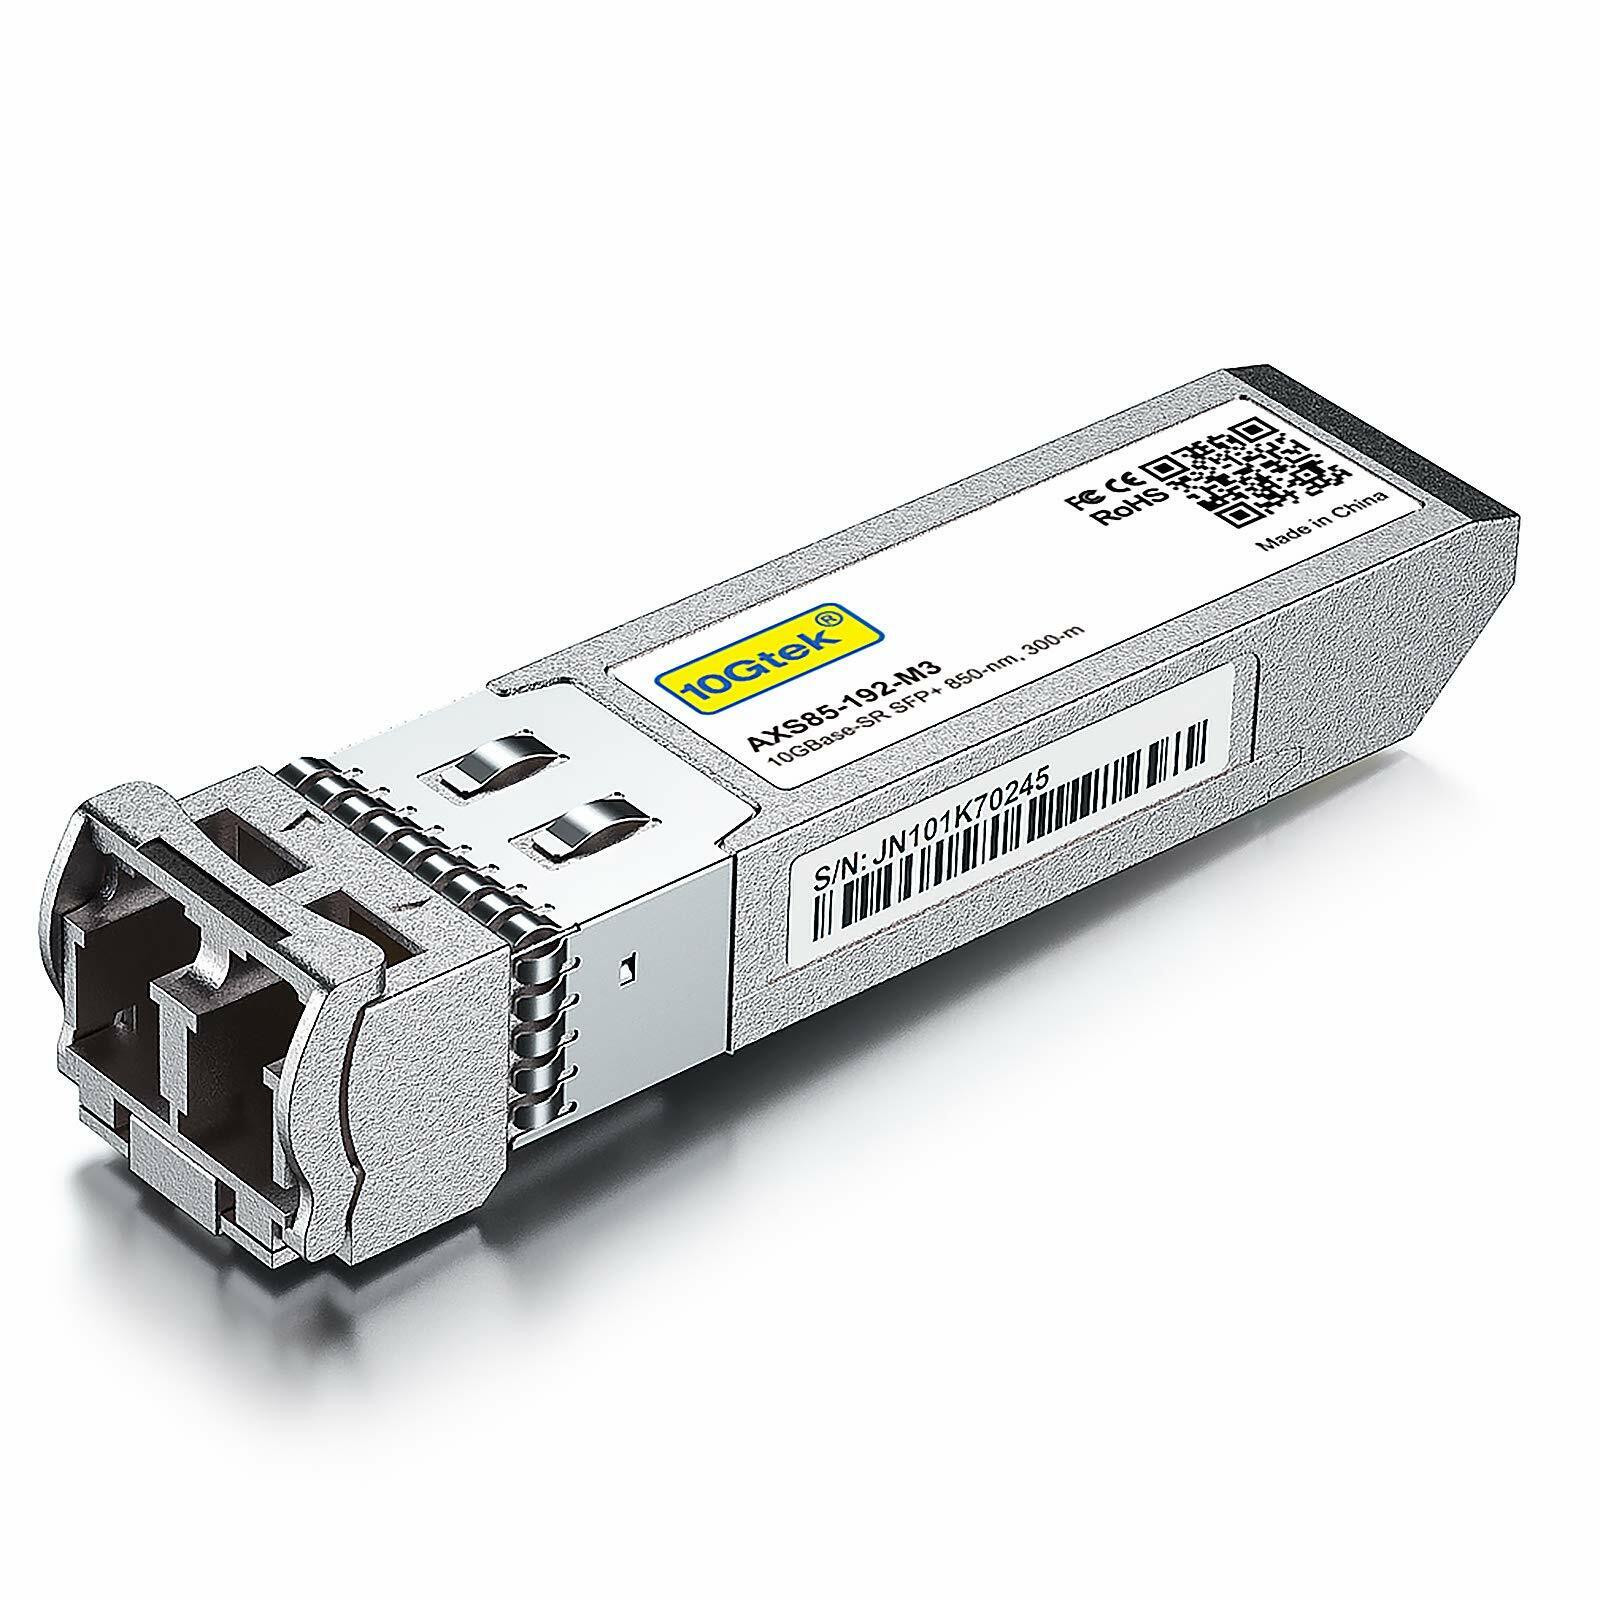 10GBase-SR SFP+ Transceiver For Cisco SFP-10G-SR multimode SFP 850nm up to 300 M